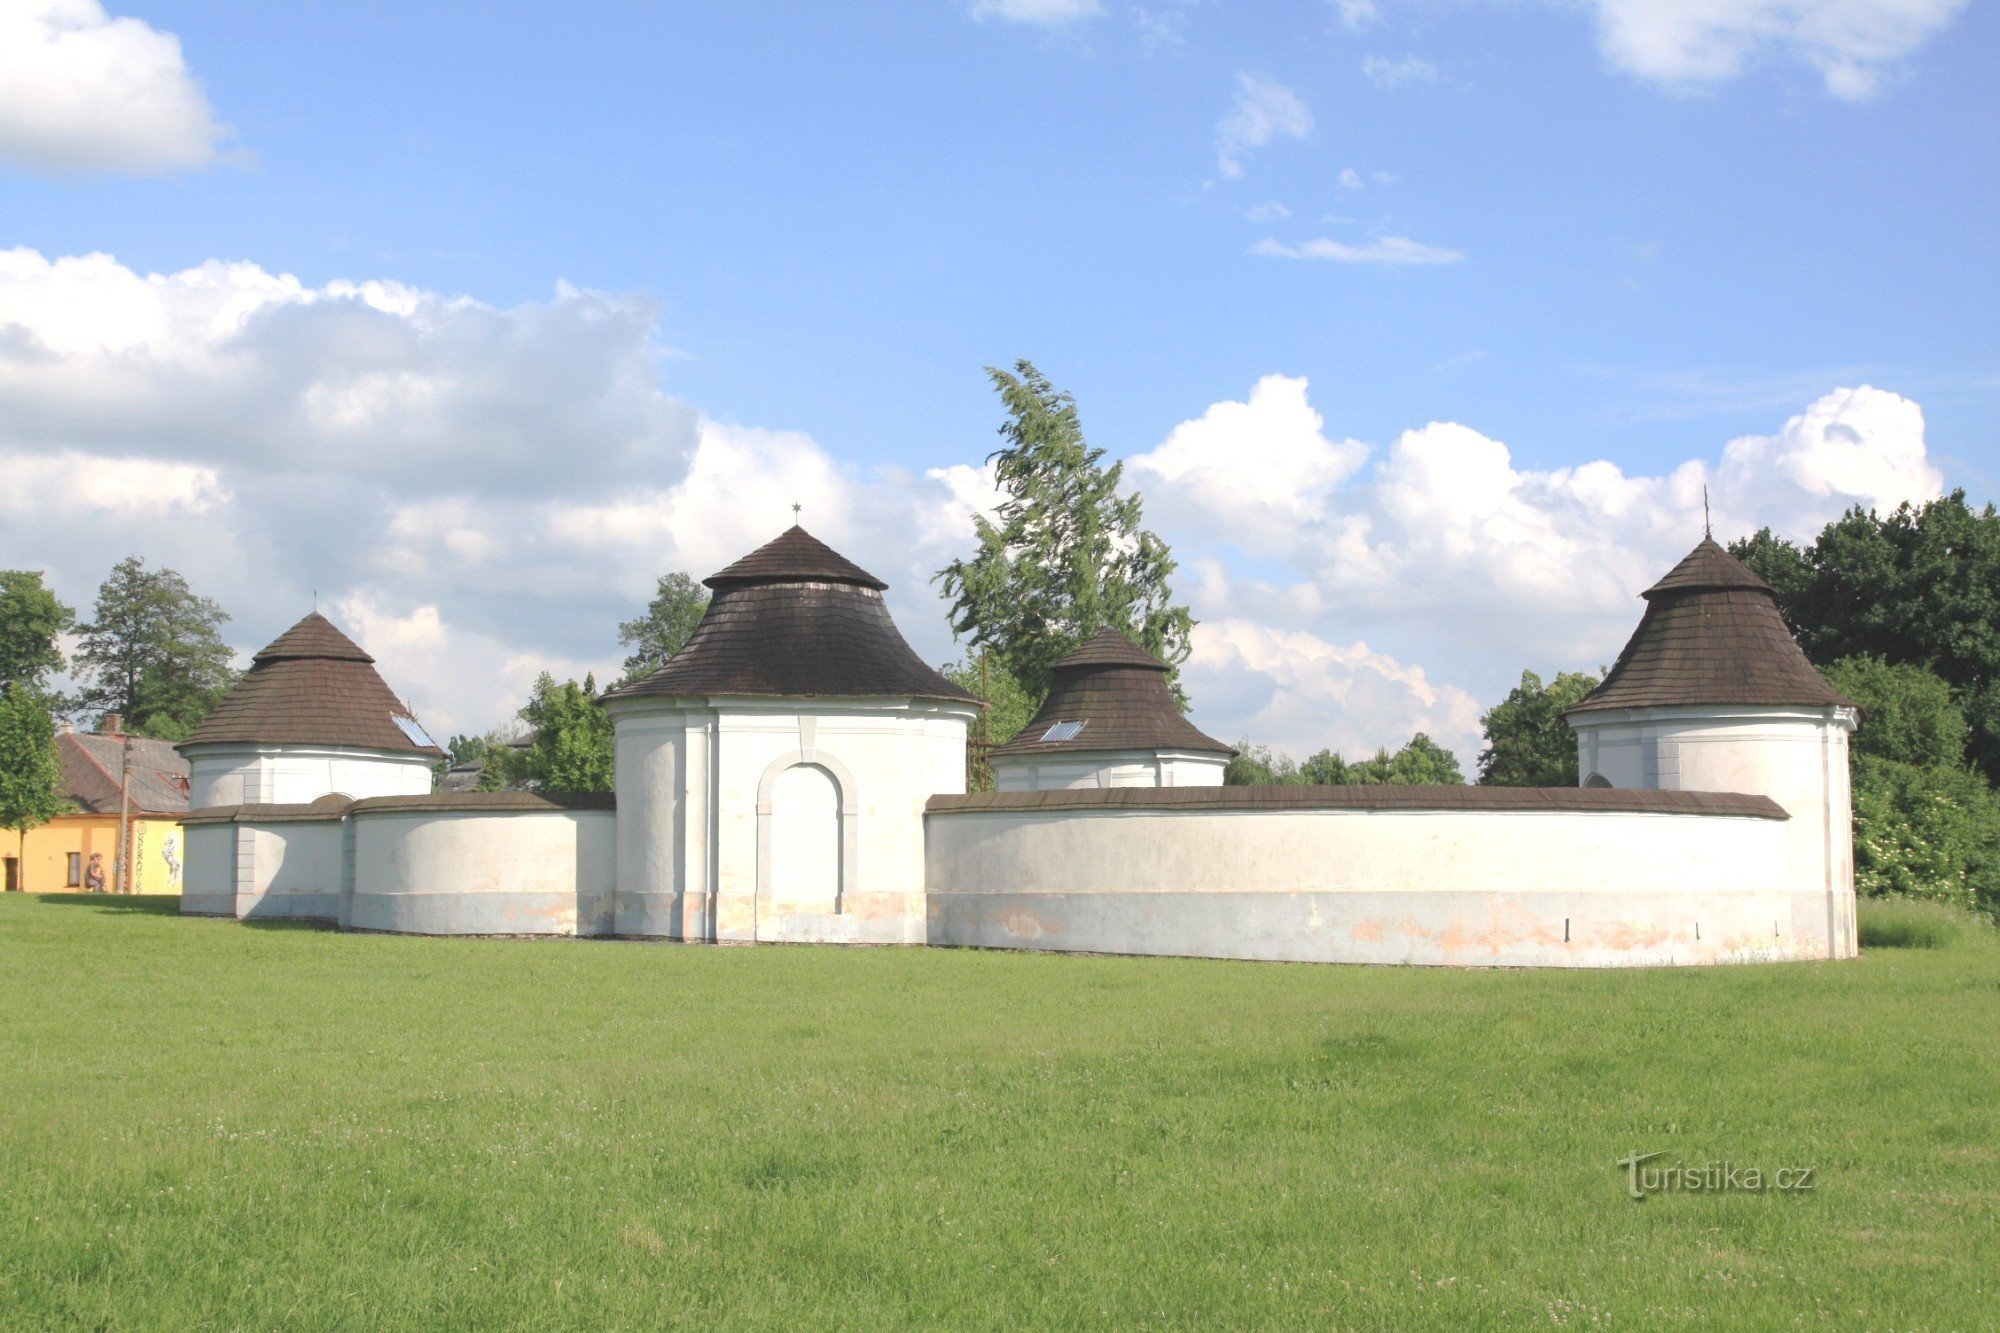 Žďár nad Sázavou - nekdanje kužno pokopališče